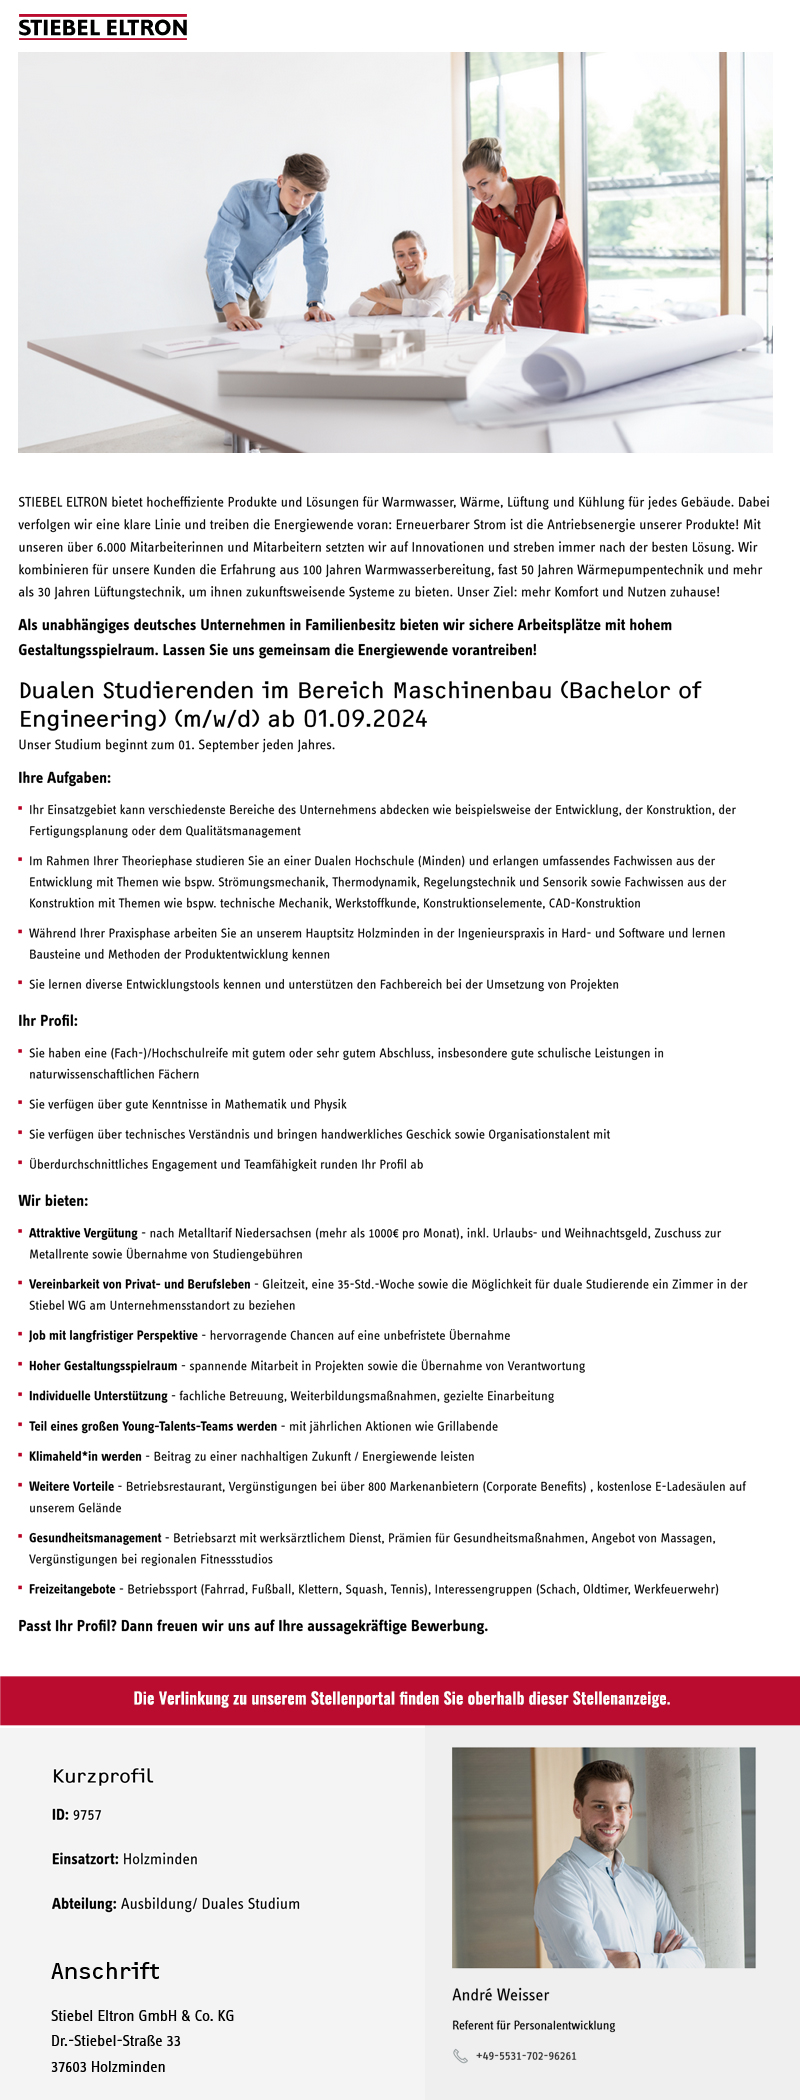 Dualen Studierenden im Bereich Maschinenbau (Bachelor of Engineering) (m/w/d) ab 01.09.2024 - Stiebel Eltron GmbH & Co. KG